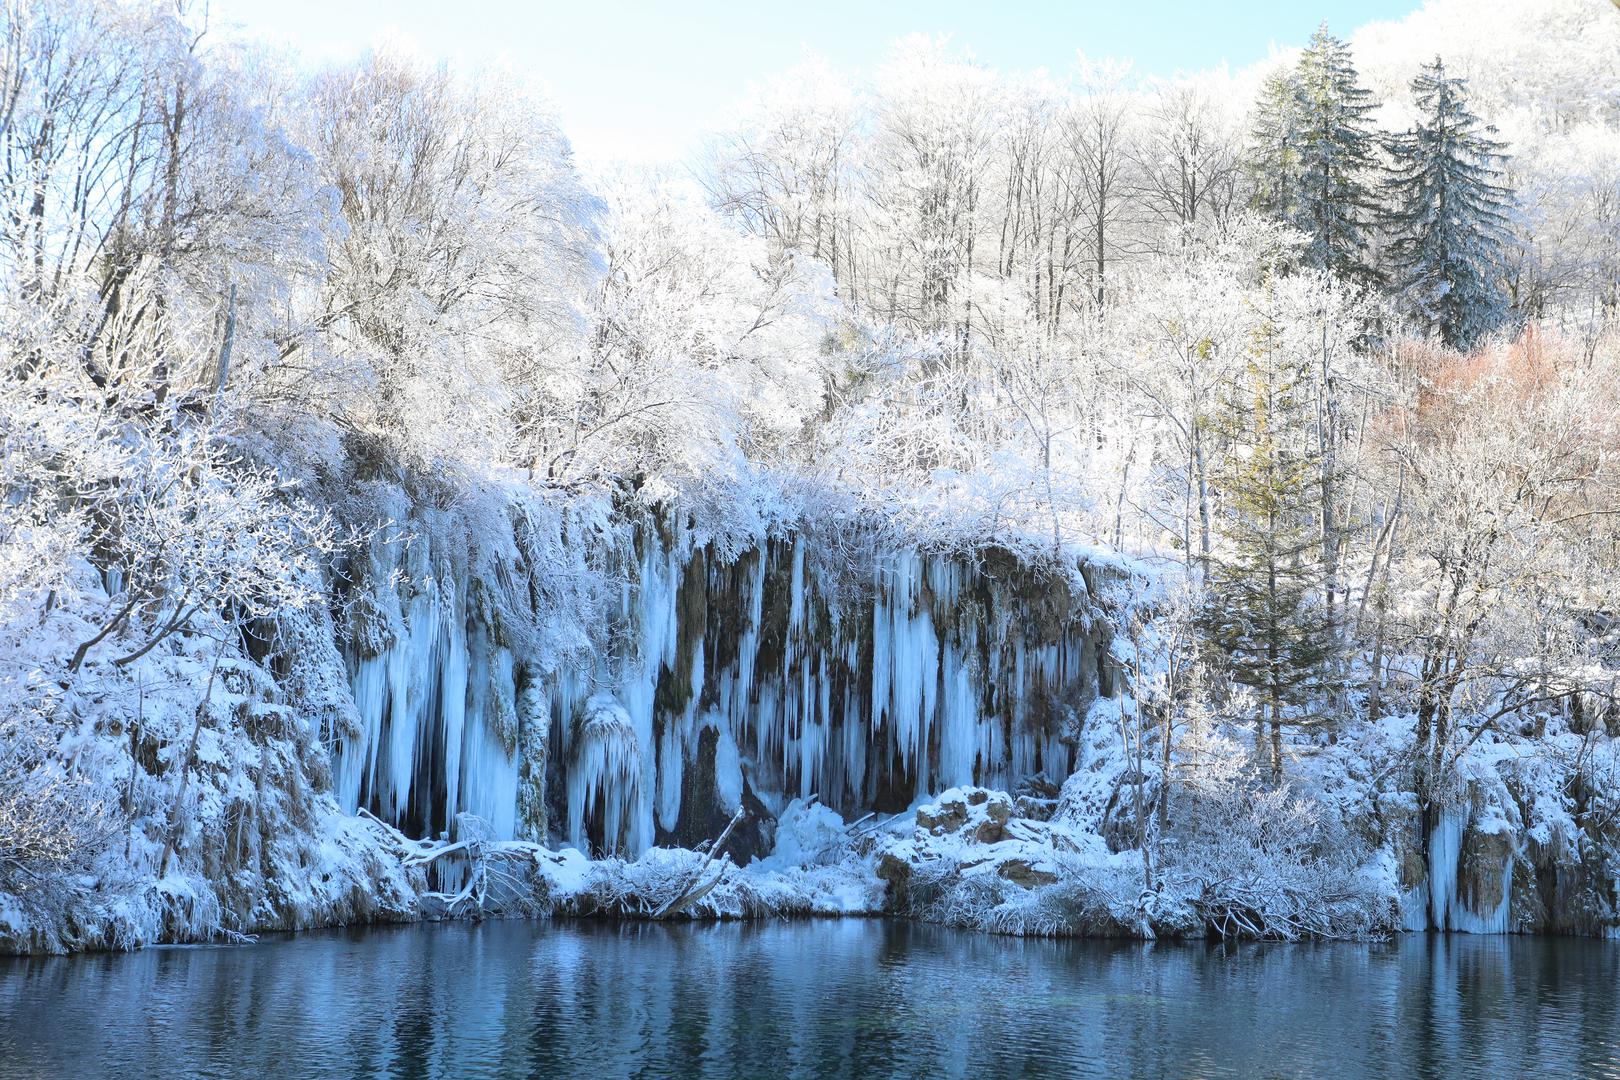 Nacionalni park Plitvička jezera jedna je od najpoznatijih atrakcija u Hrvatskoj, a predivne fotografije prikazuju kako je ne treba zaobići ni zimi. Snijeg i debeli minusi zaledili su slapove na Plitvičkim jezerima, što je oduševilo posjetitelje. 